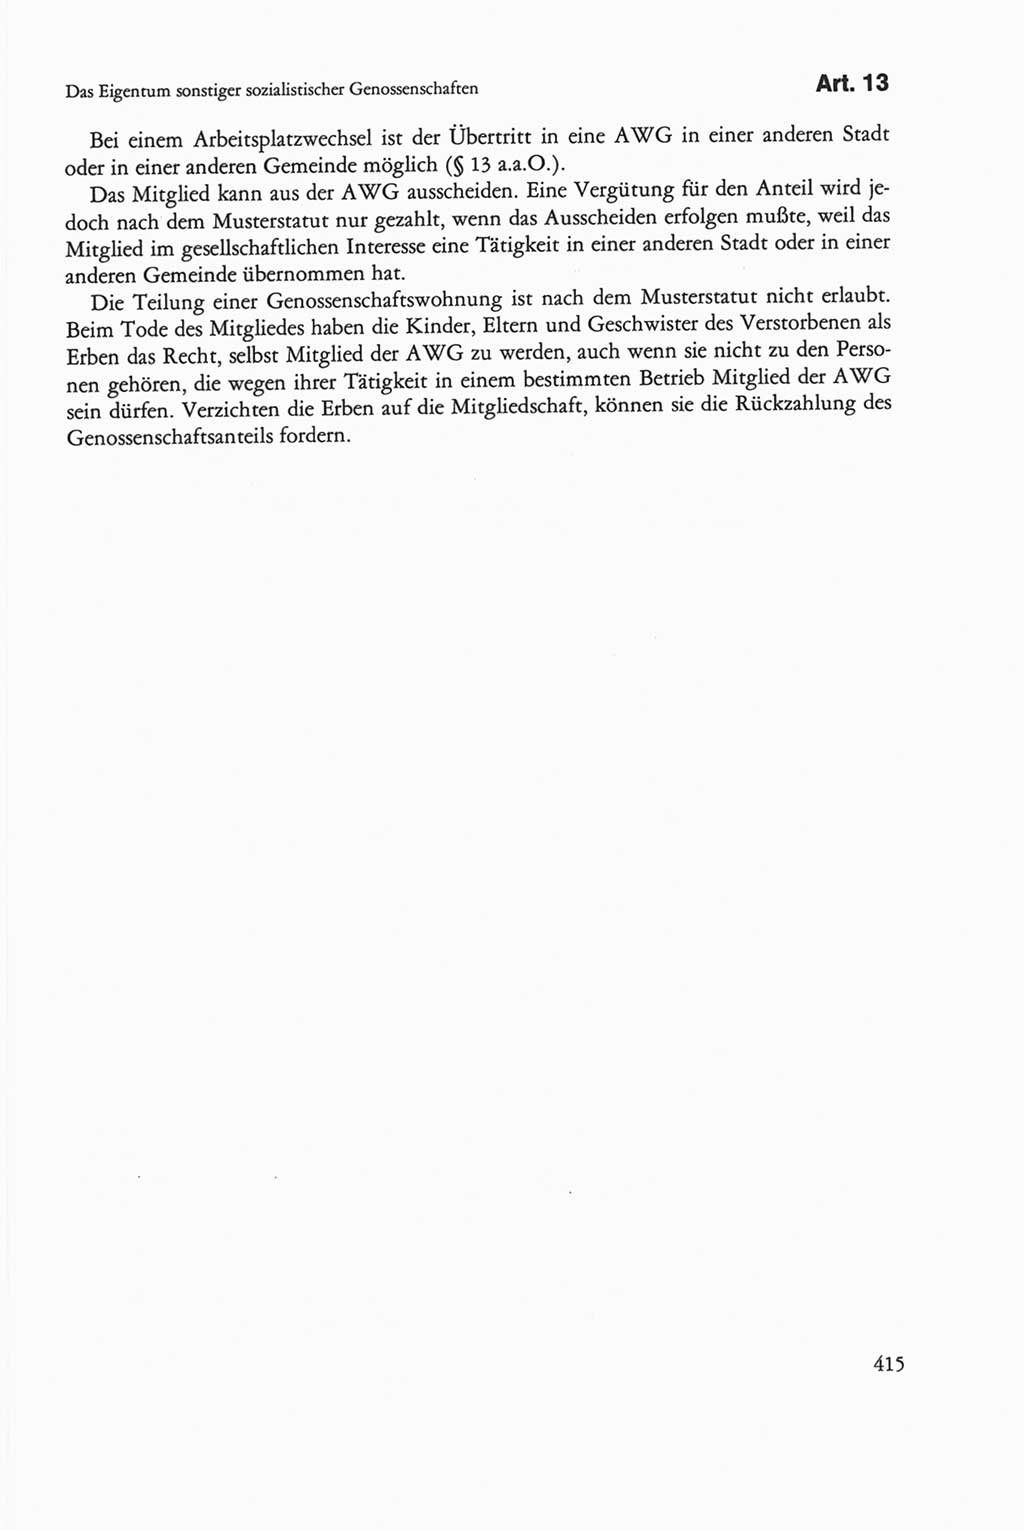 Die sozialistische Verfassung der Deutschen Demokratischen Republik (DDR), Kommentar mit einem Nachtrag 1997, Seite 415 (Soz. Verf. DDR Komm. Nachtr. 1997, S. 415)